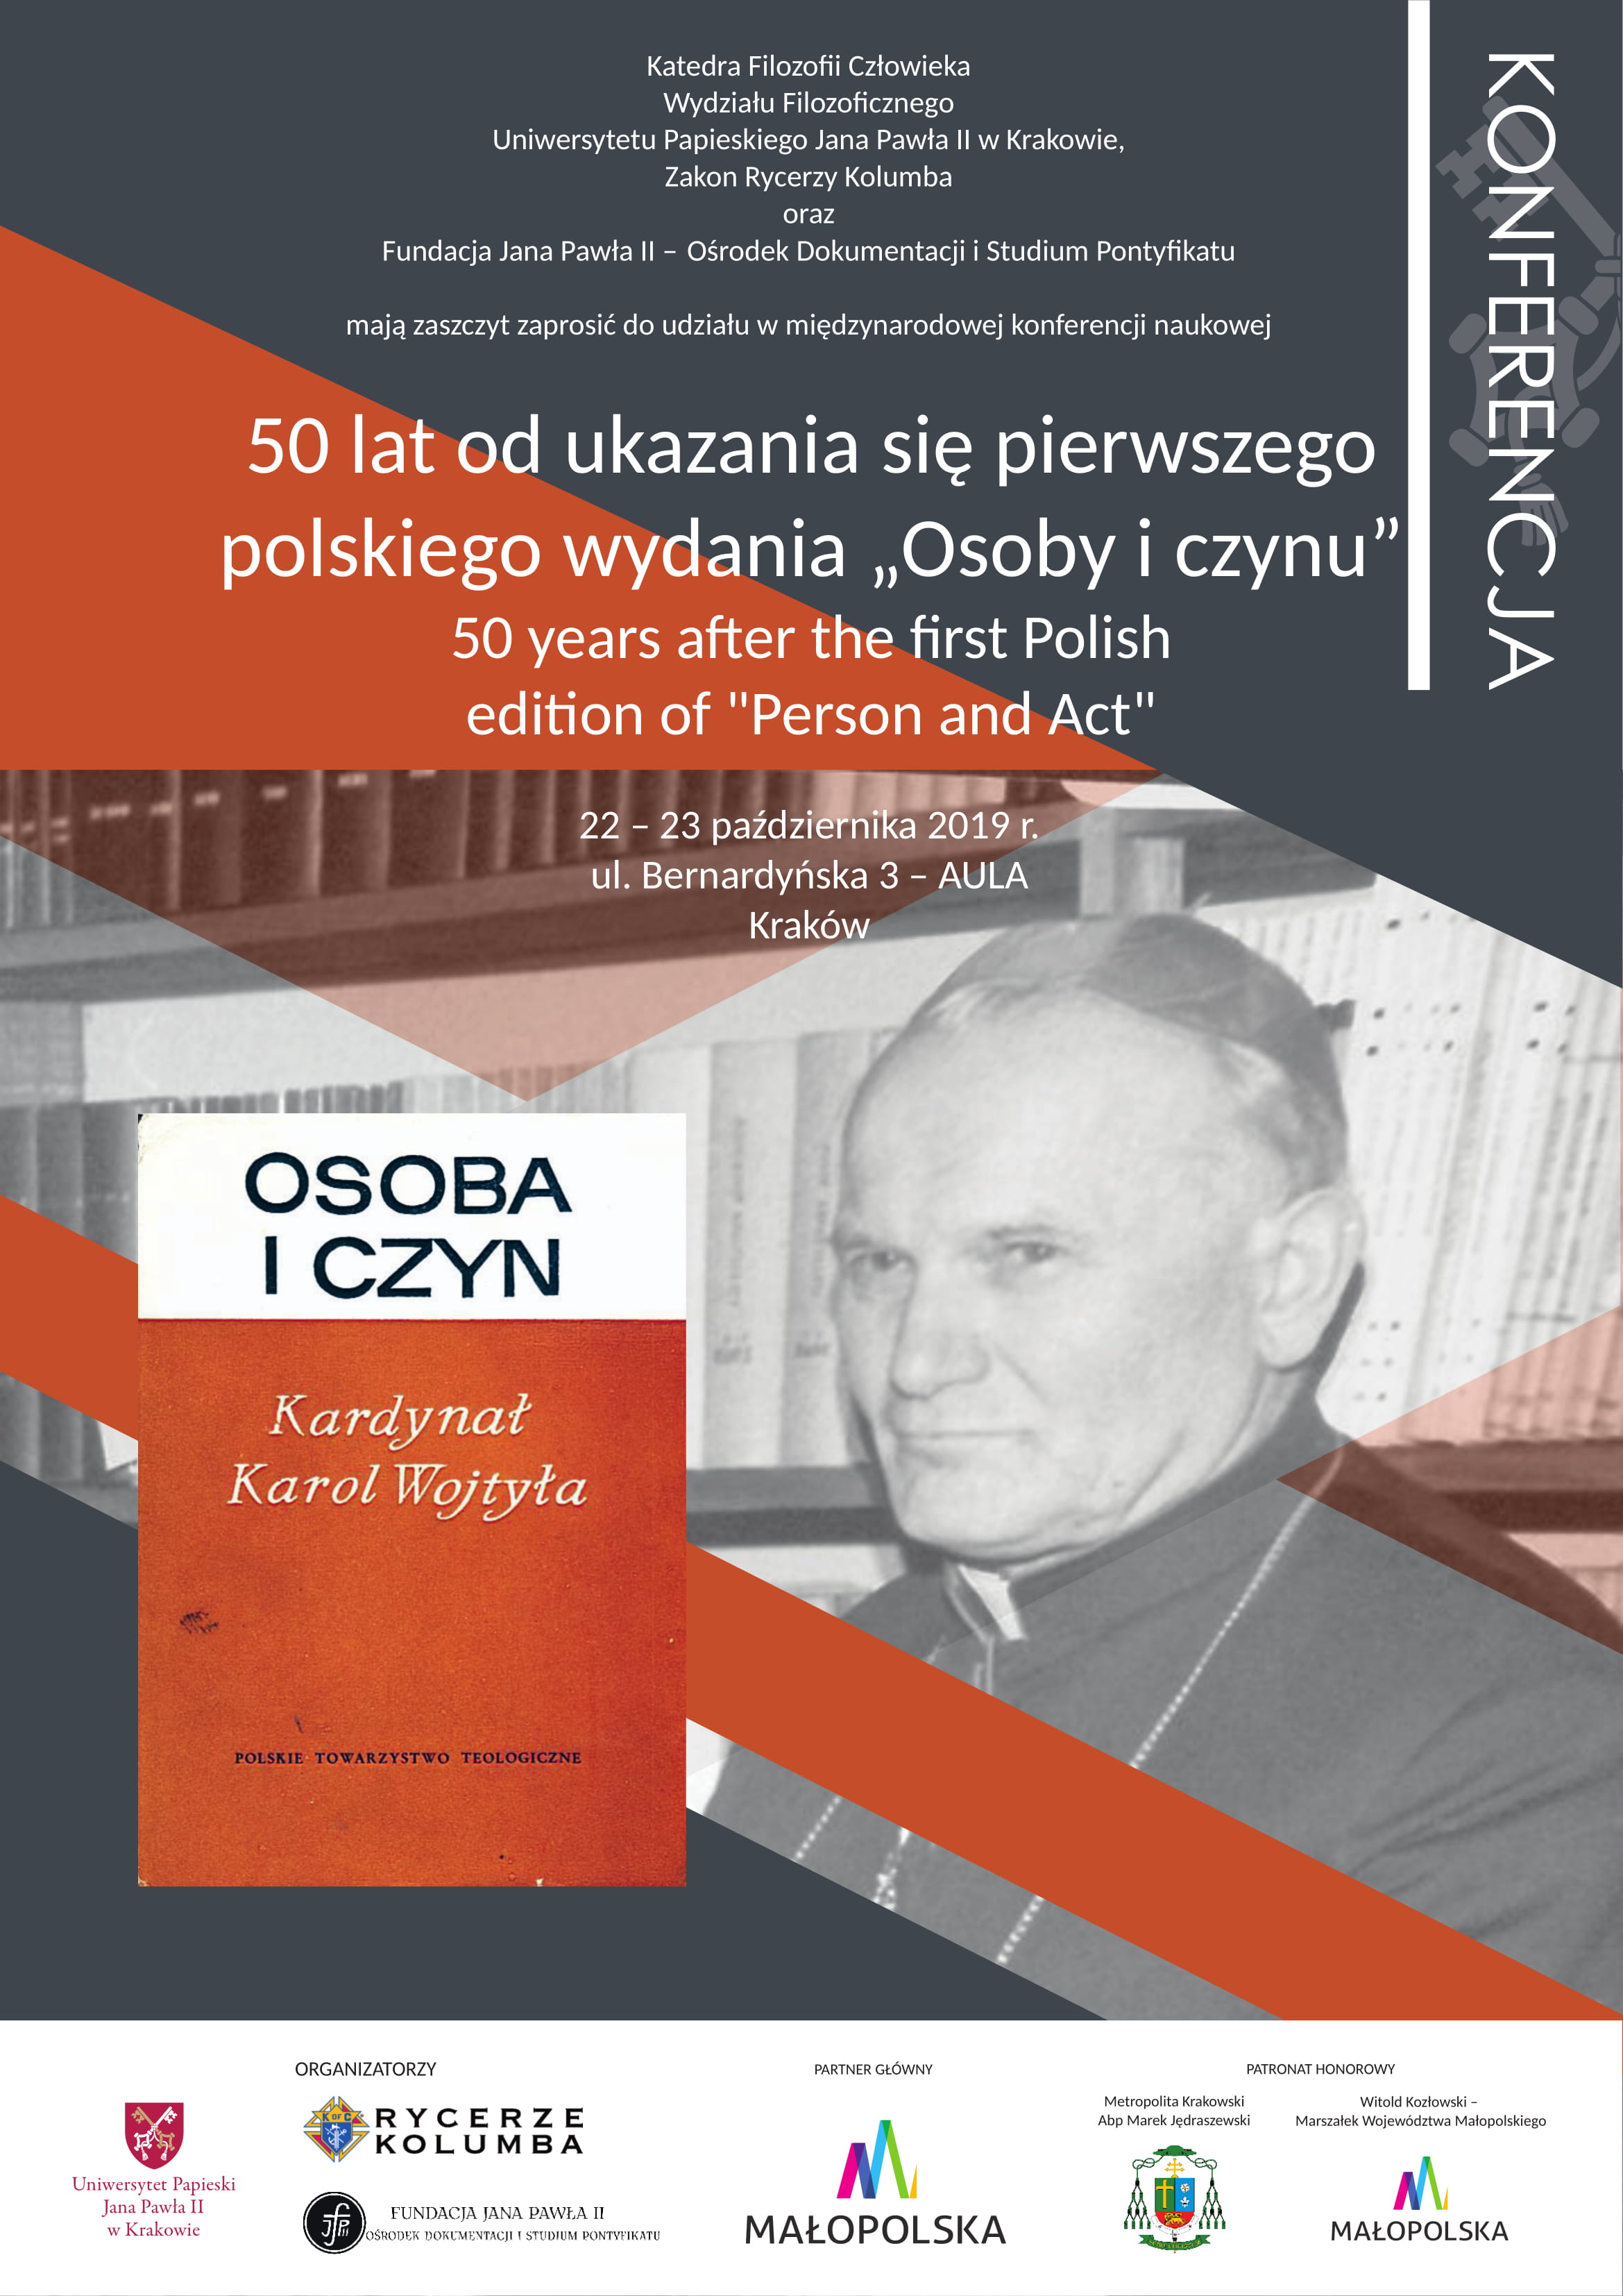 Konferencja naukowa 50 lat od ukazania sie pierwszego polskiego wydania “Osoba i czyn”.